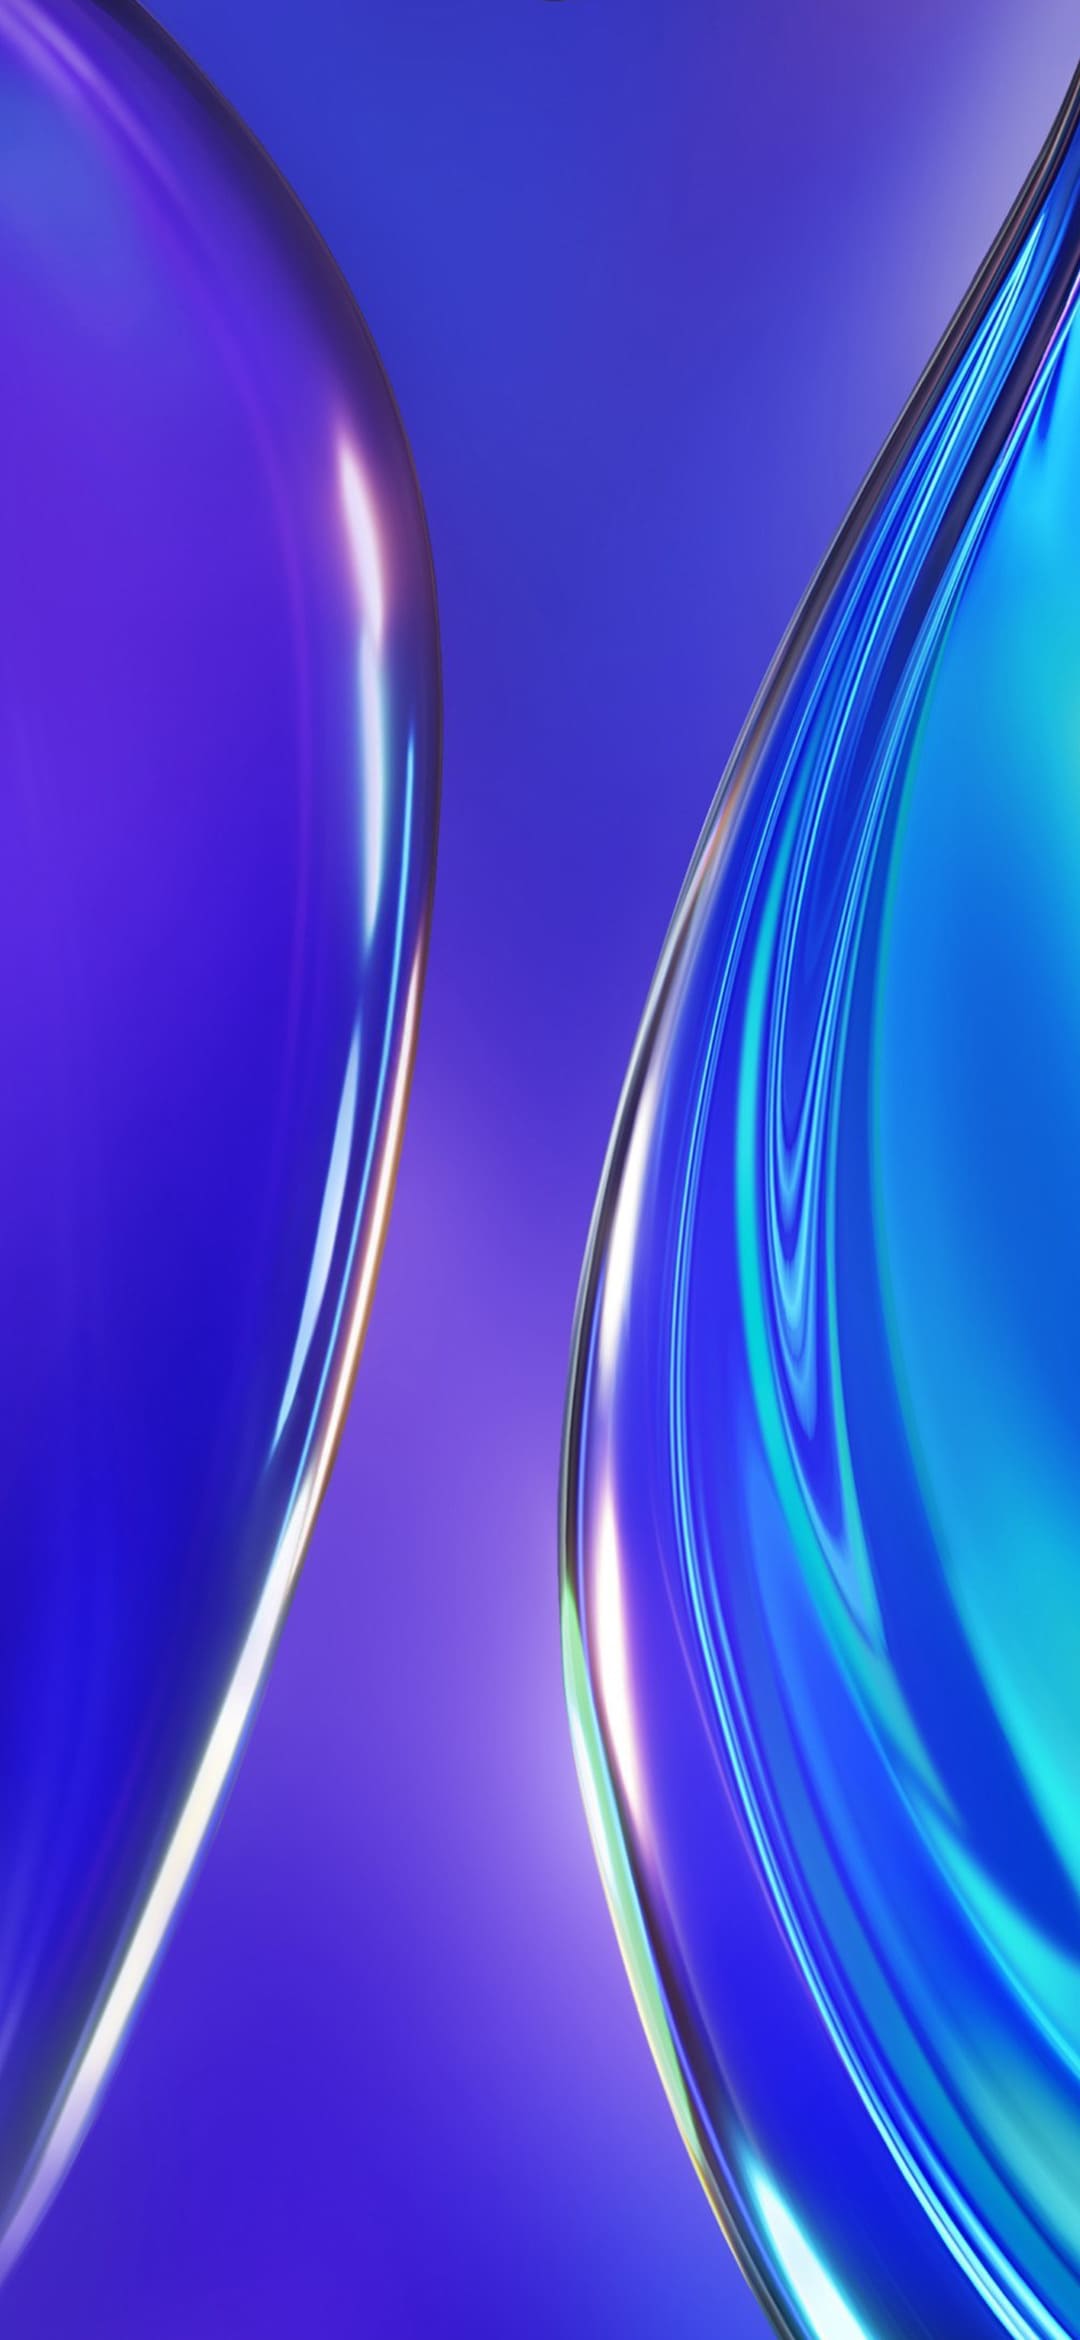 fond d'écran,bleu,l'eau,violet,bleu cobalt,violet